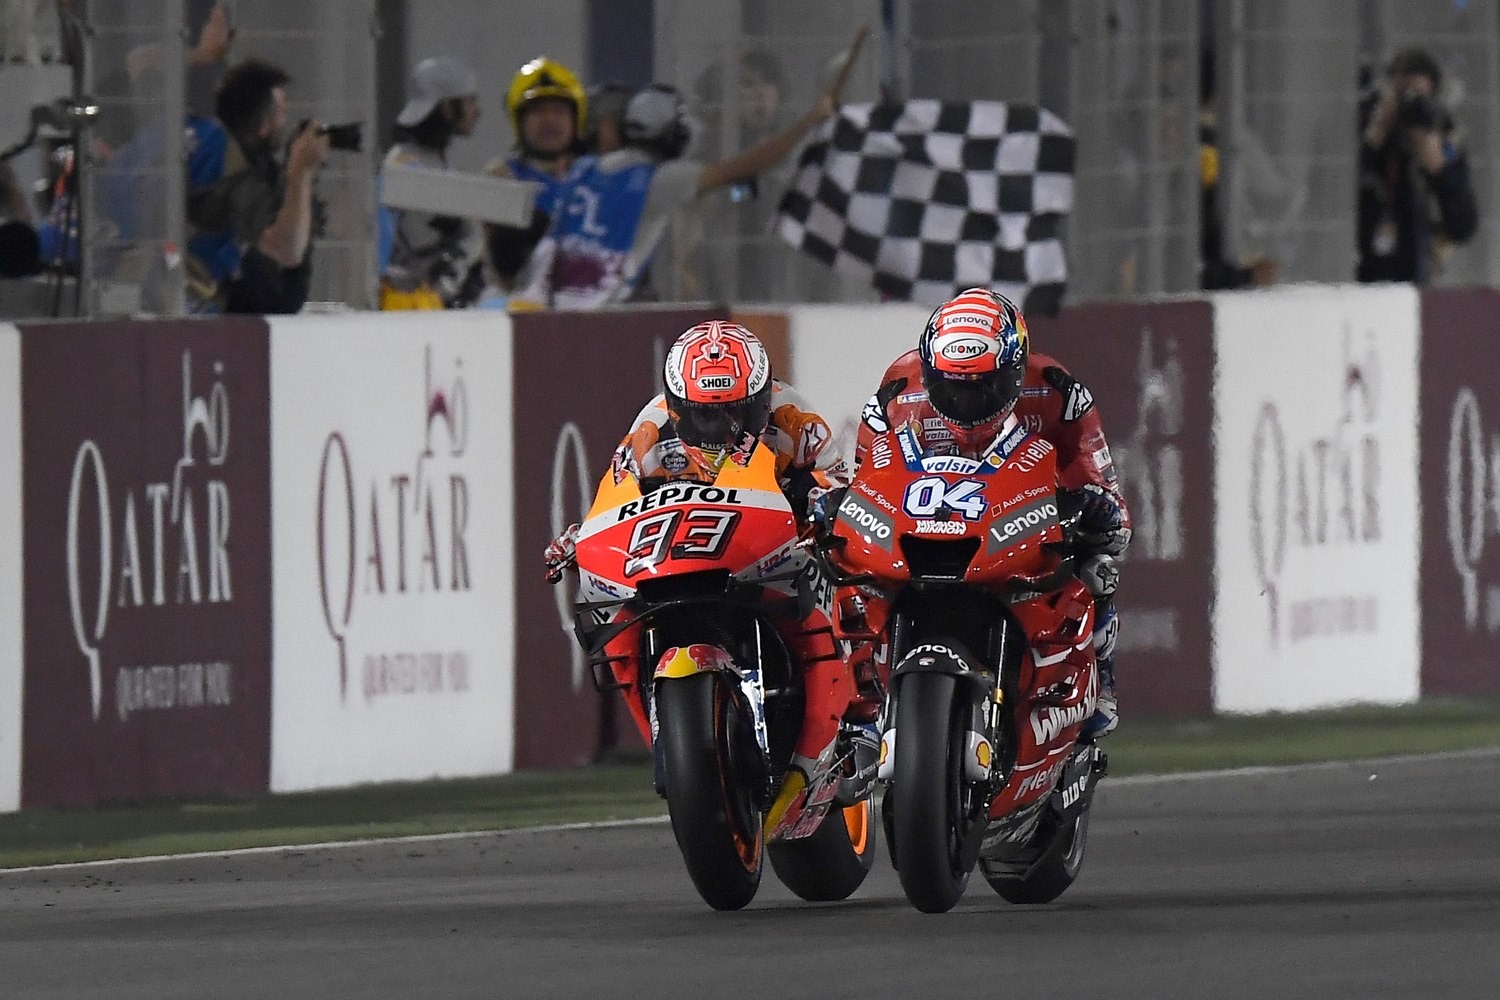 Παλικαρίσια νίκη του Ντοβιτσιόζο με Ducati στο Κατάρ